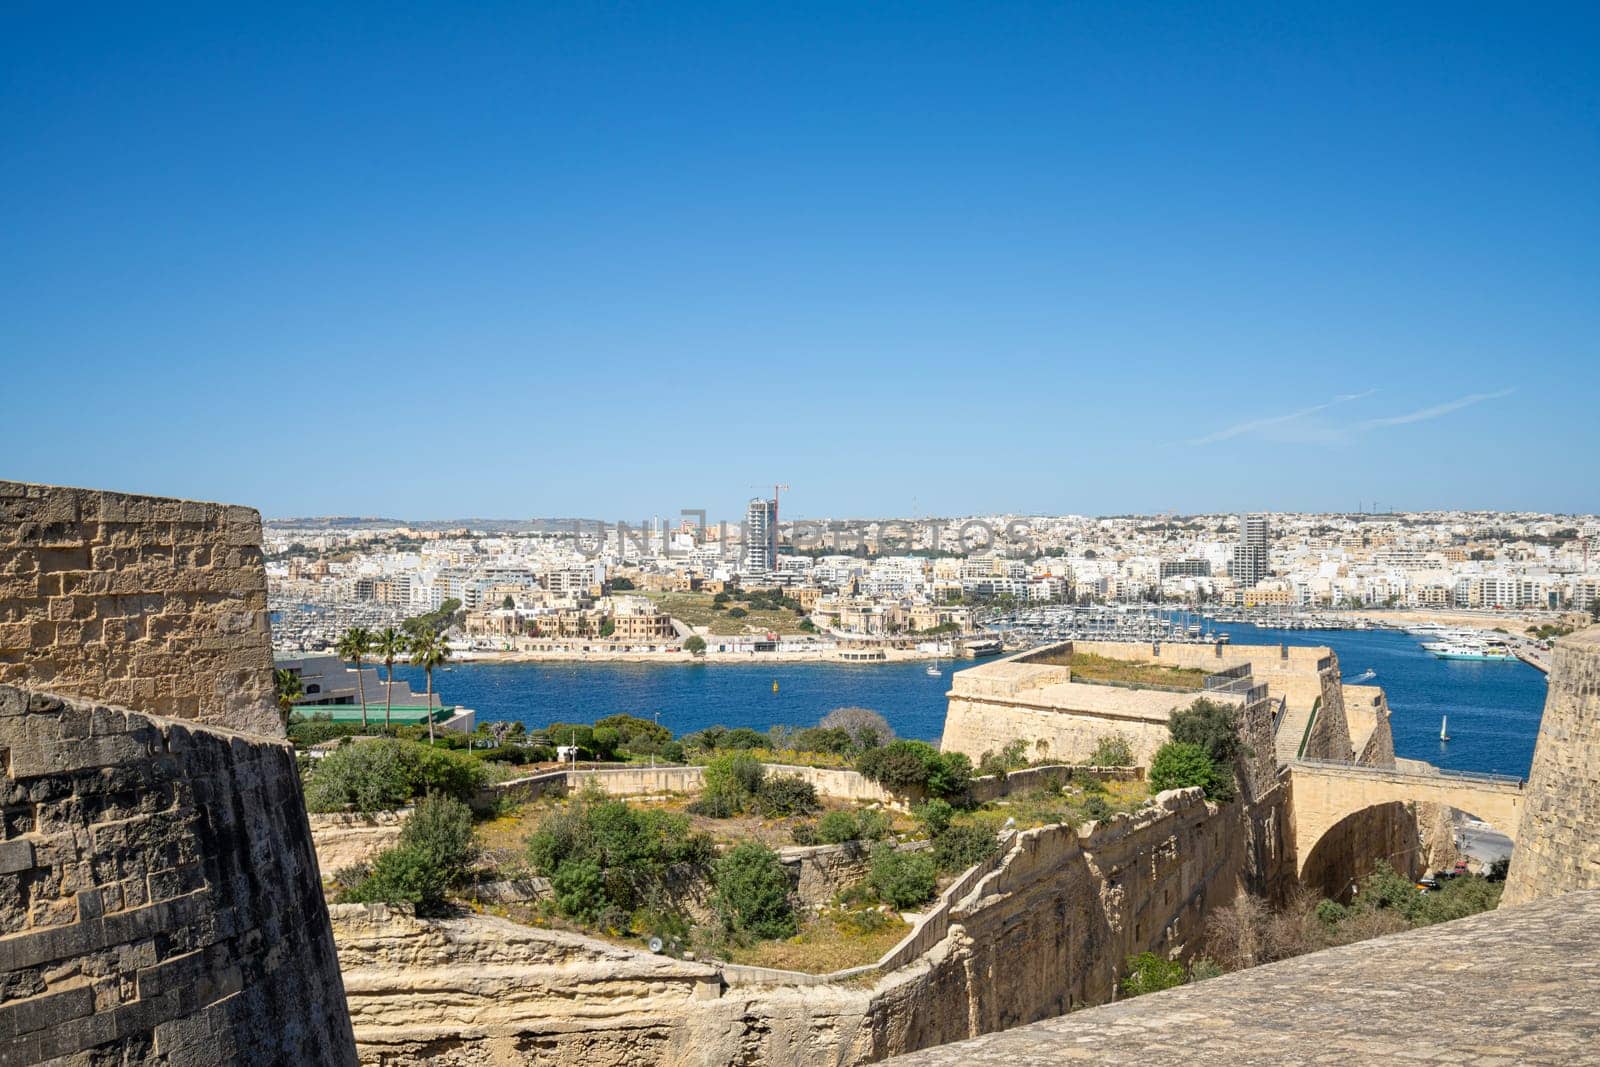  St. John bastion in Valletta, Malta by sergiodv